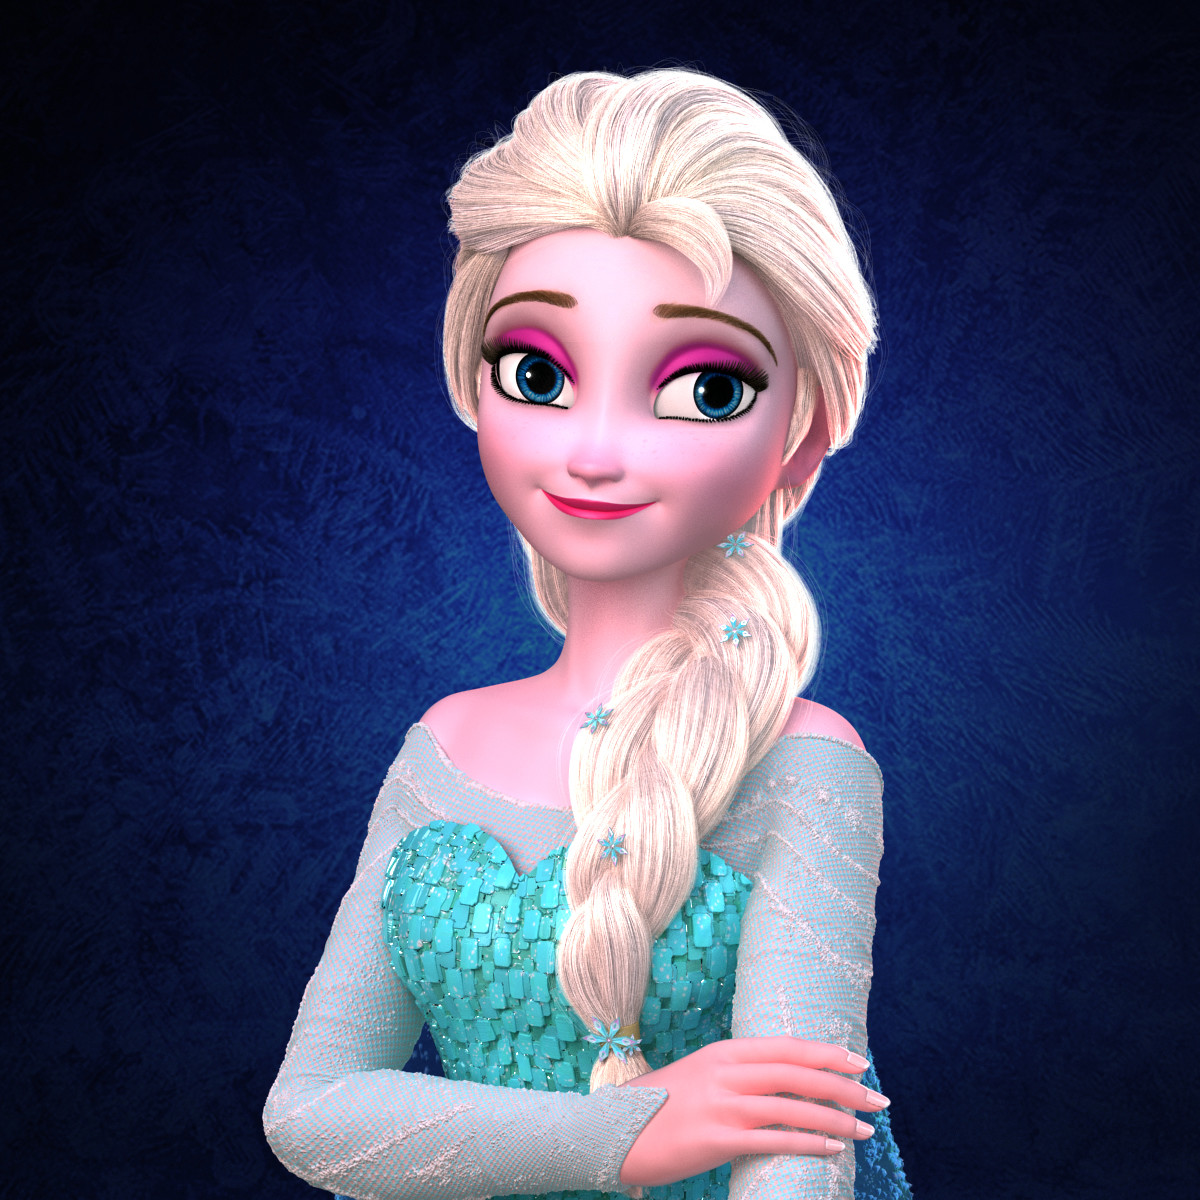 ArtStation - Princess Elsa of Frozen characters